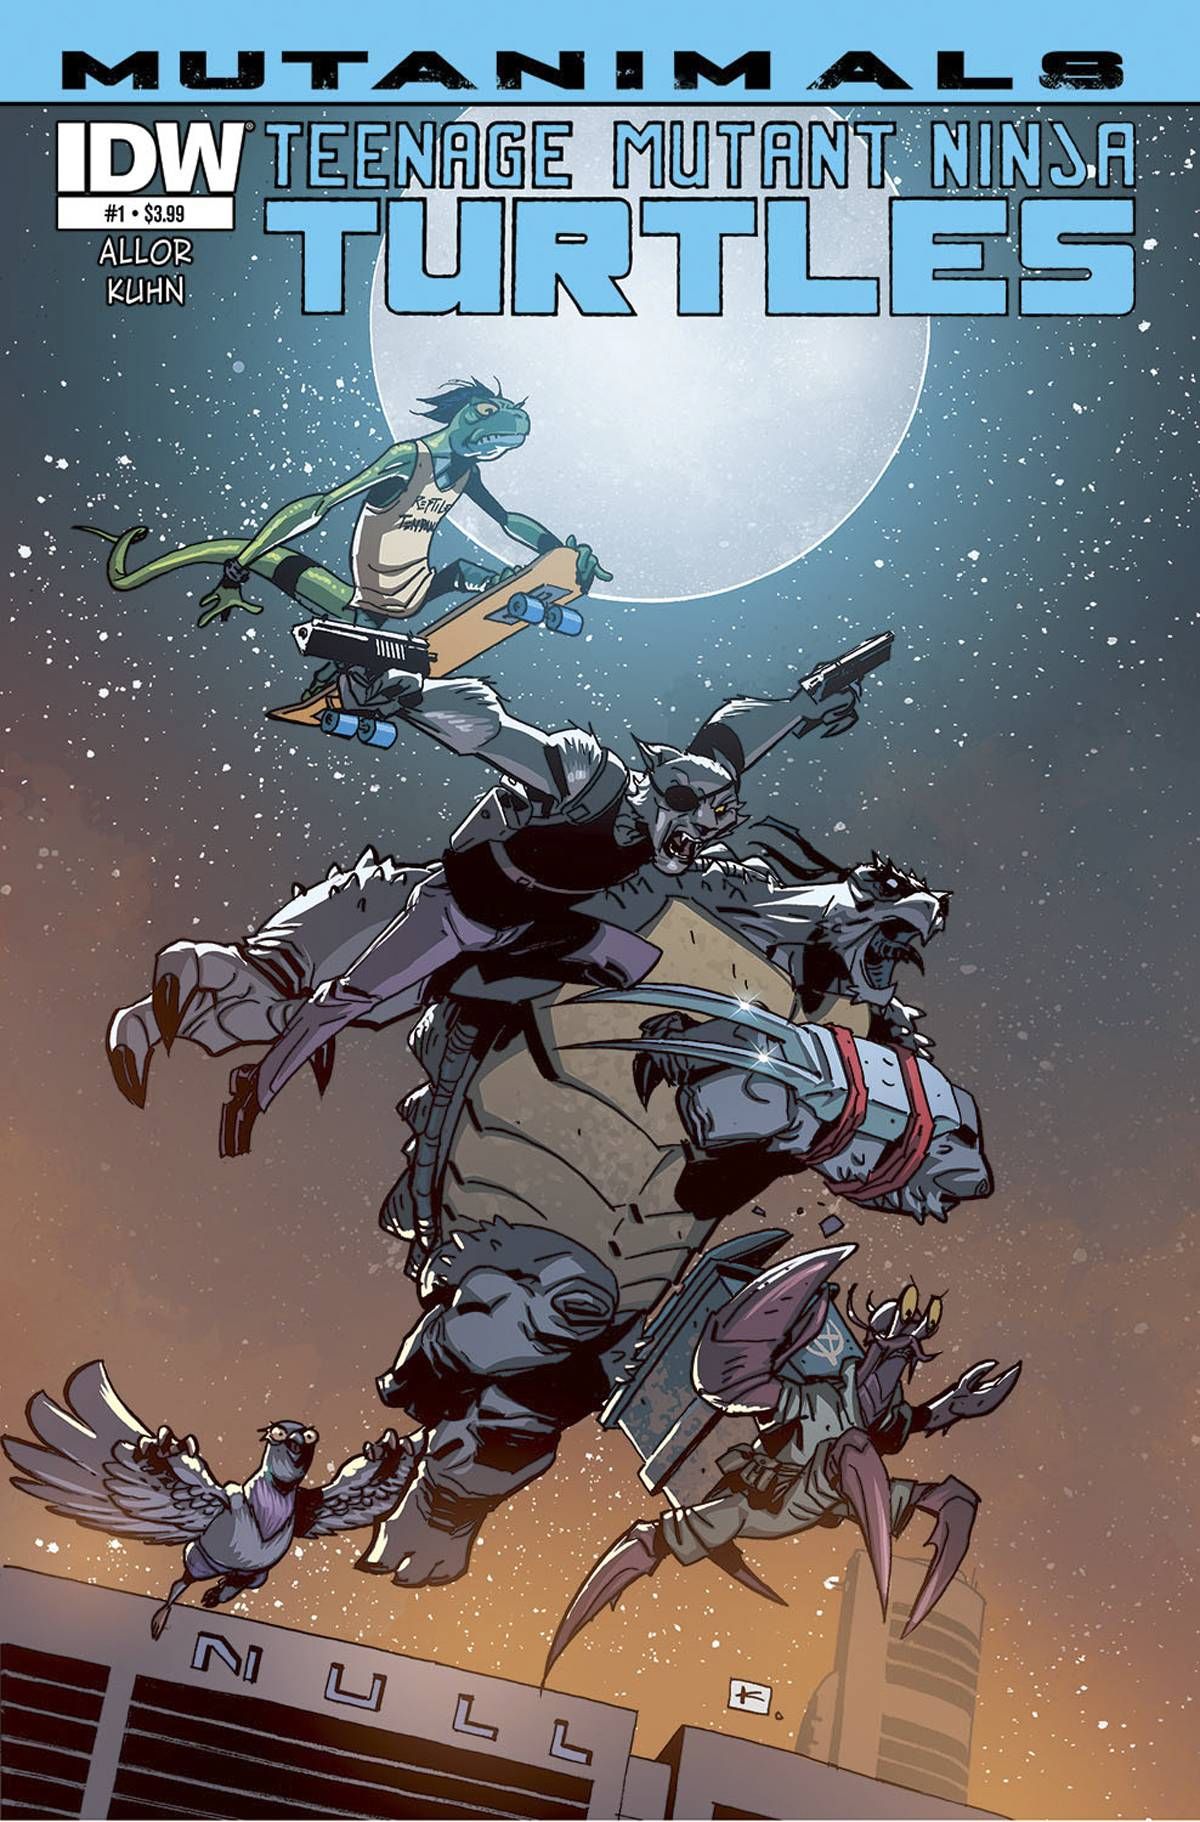 Teenage Mutant Ninja Turtles: Mutanimals Comic